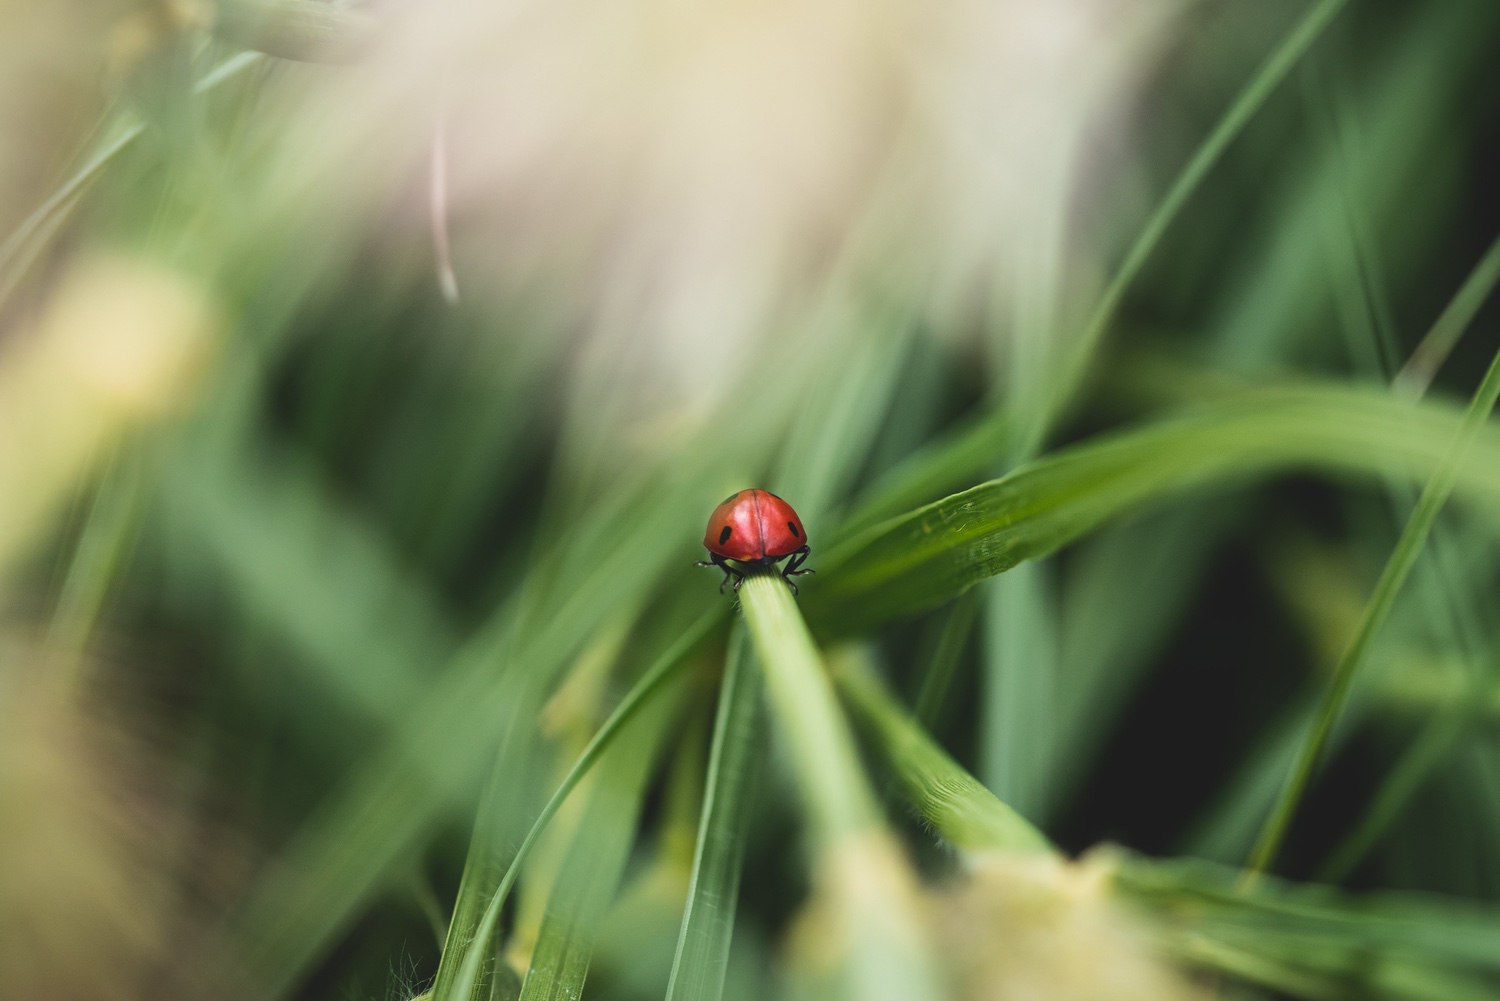 A ladybird scuttling along a plant